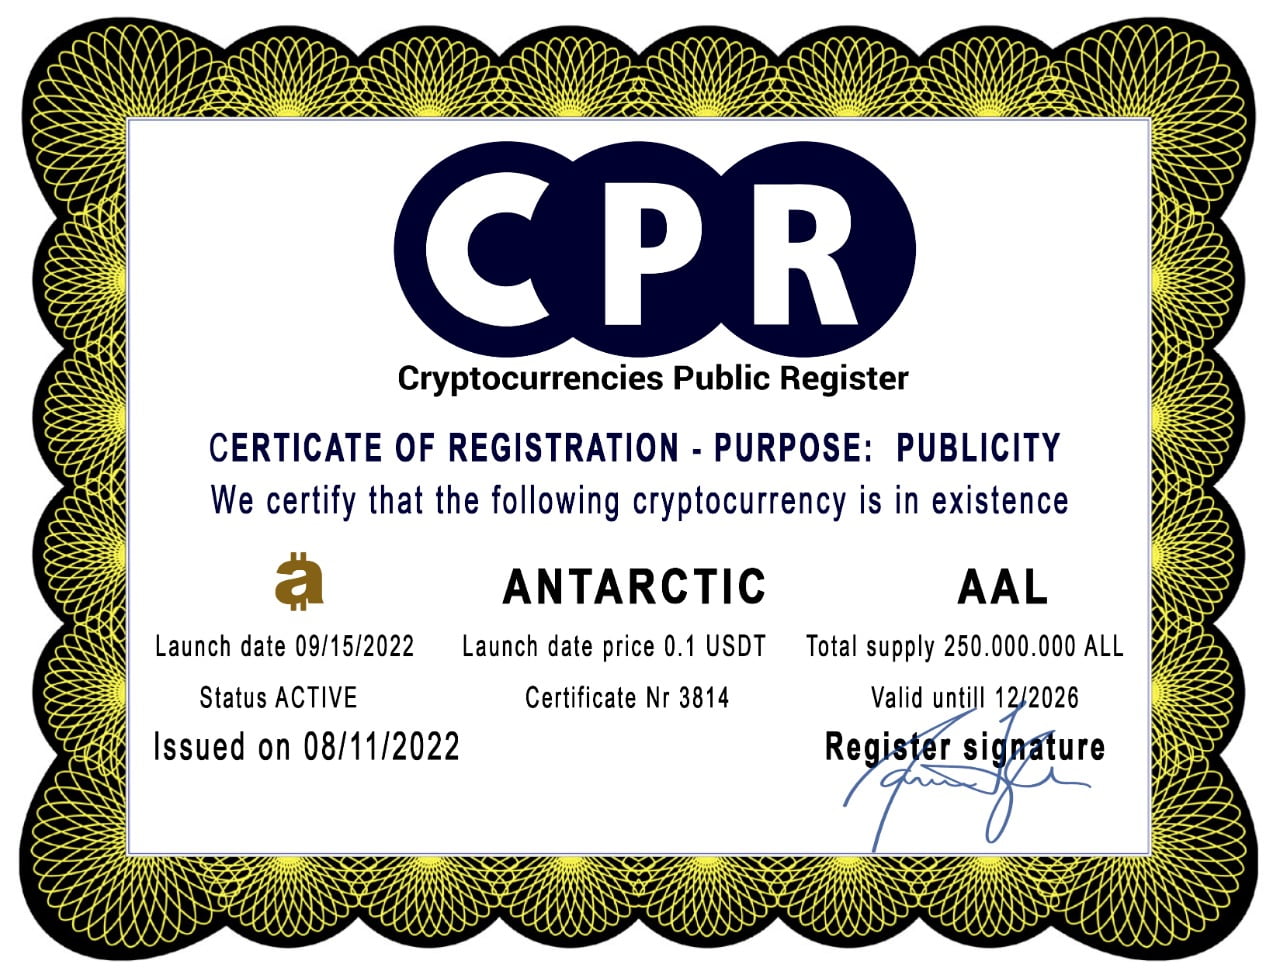 Certificate-Registration-Antarctic-AAL